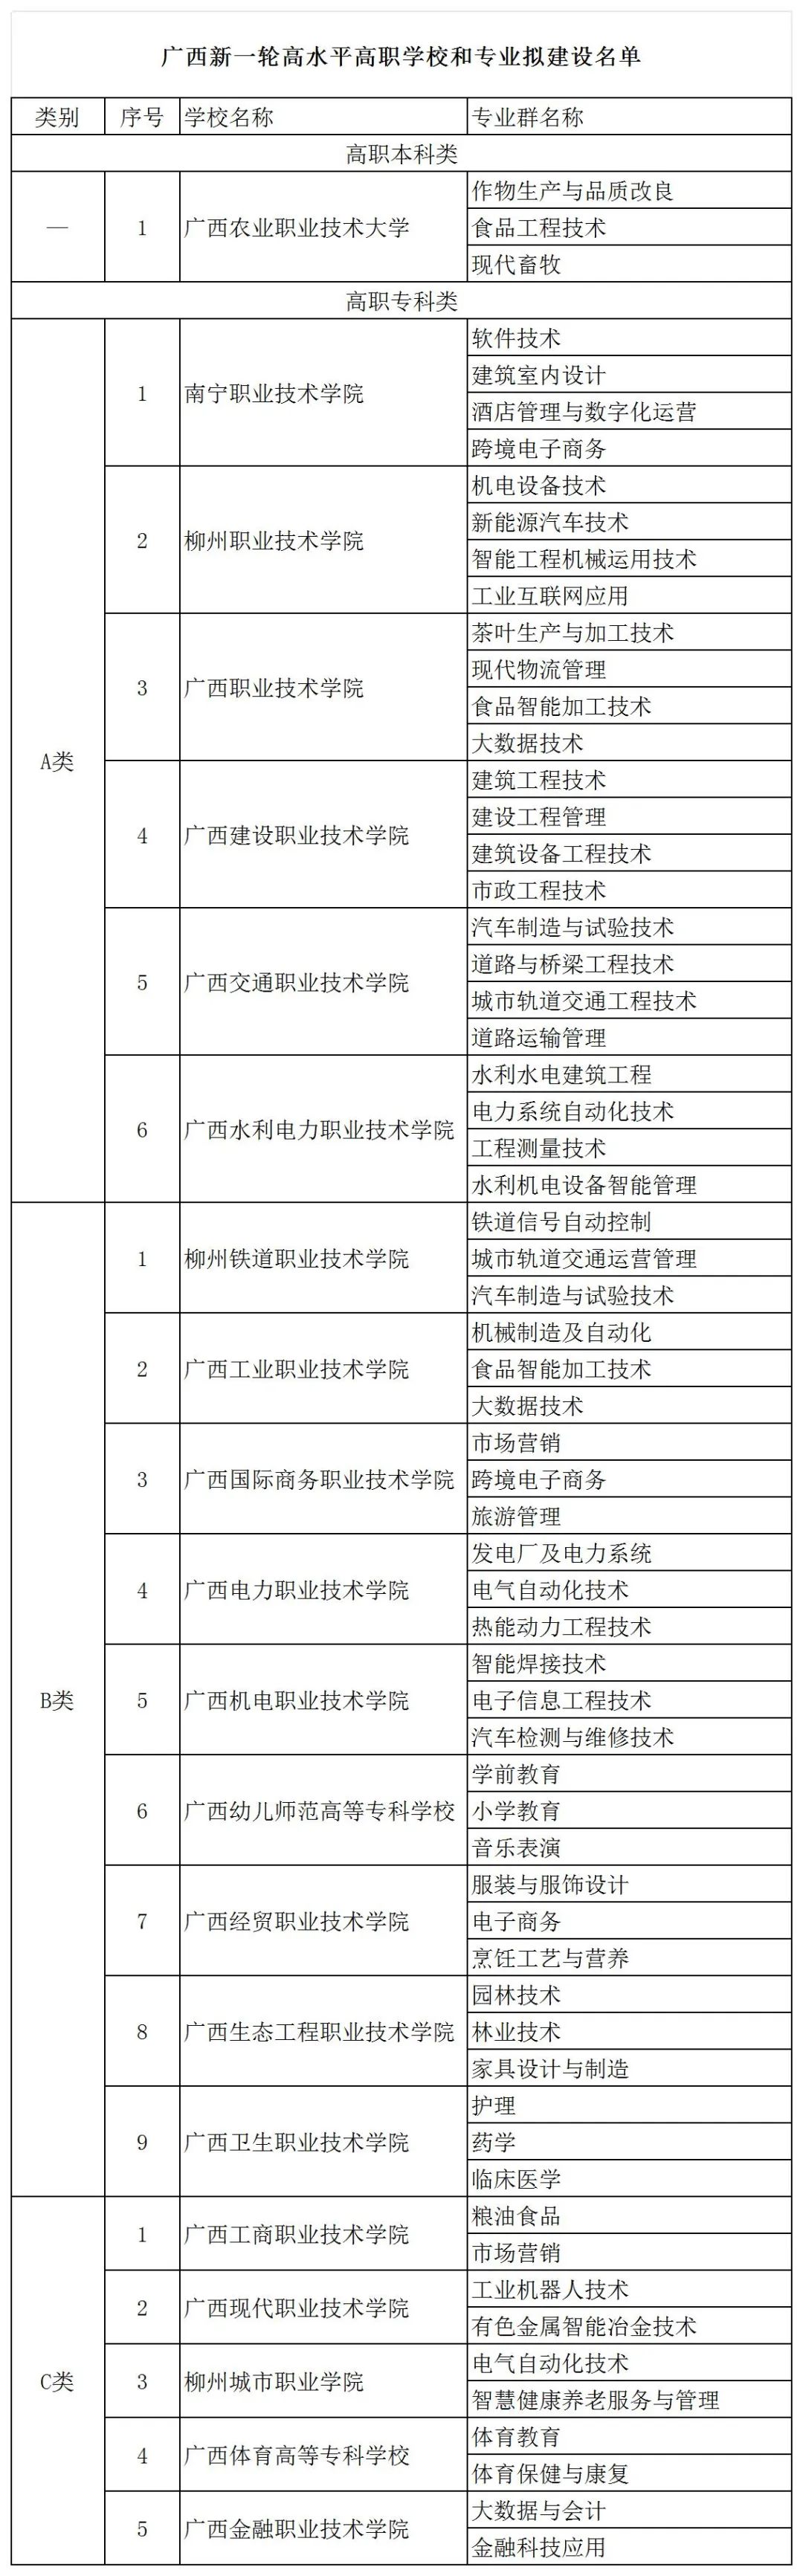 广西新一轮高水平高职学校和专业拟建设名单公示